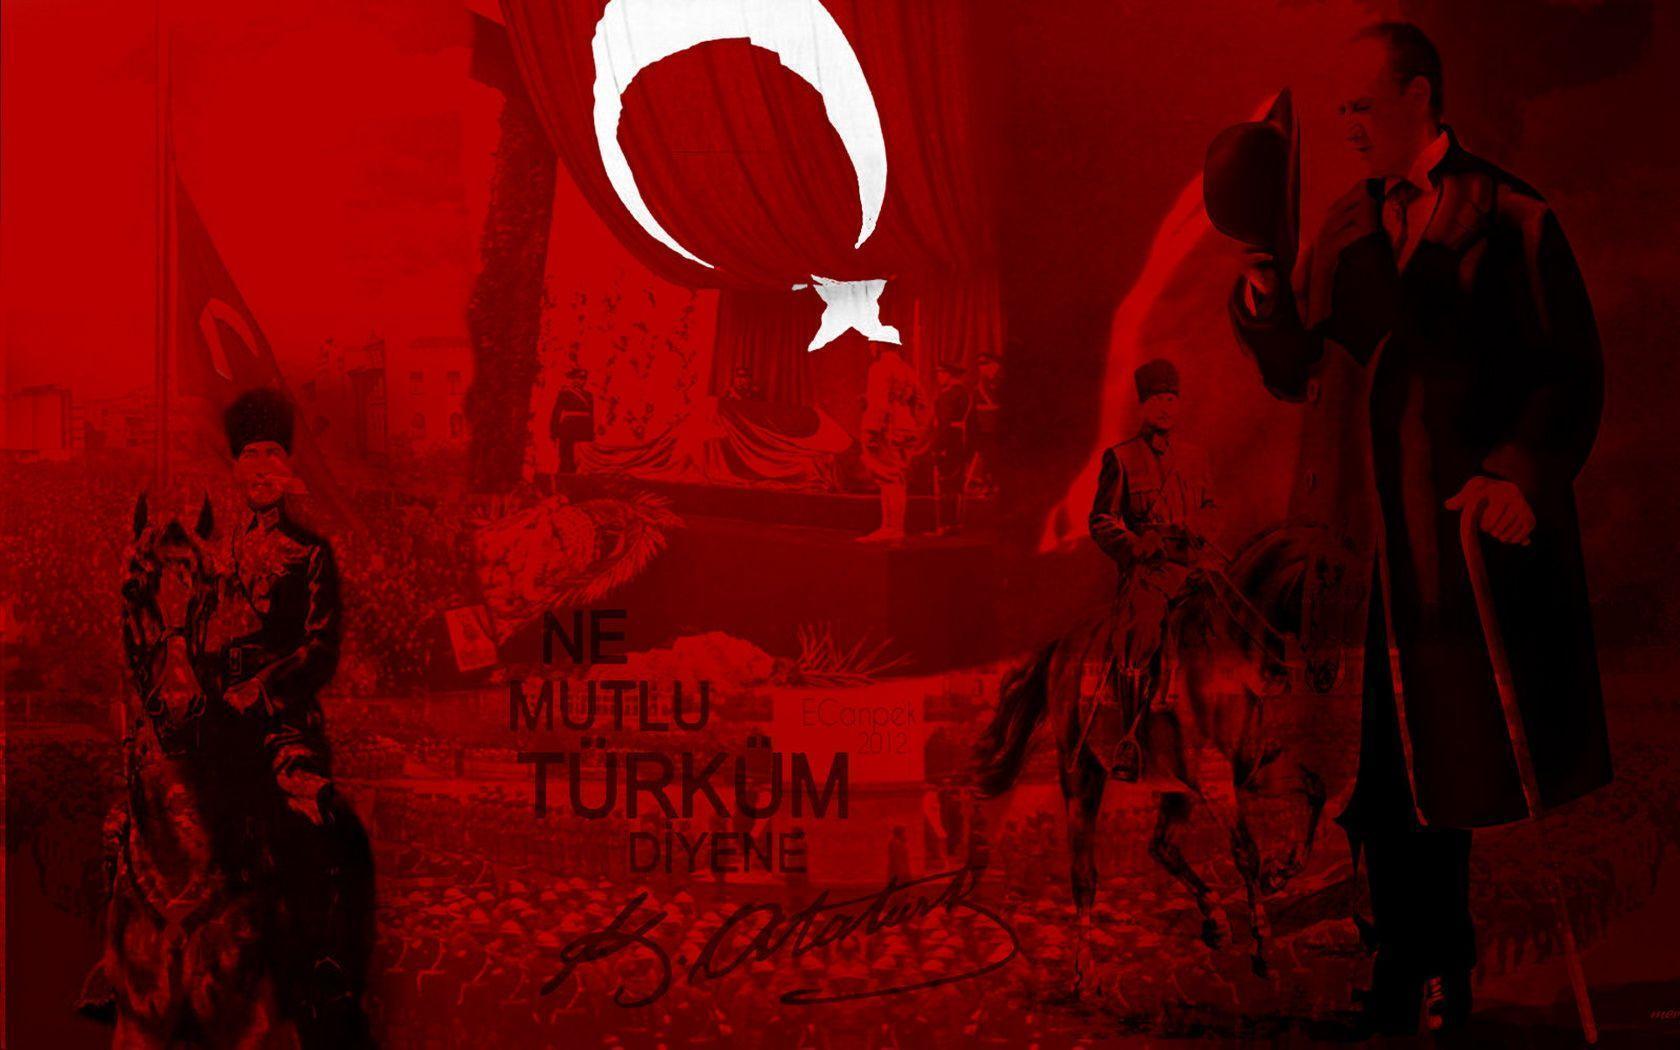 Mustafa Kemal Atatürk Computer Wallpaper, Desktop Background